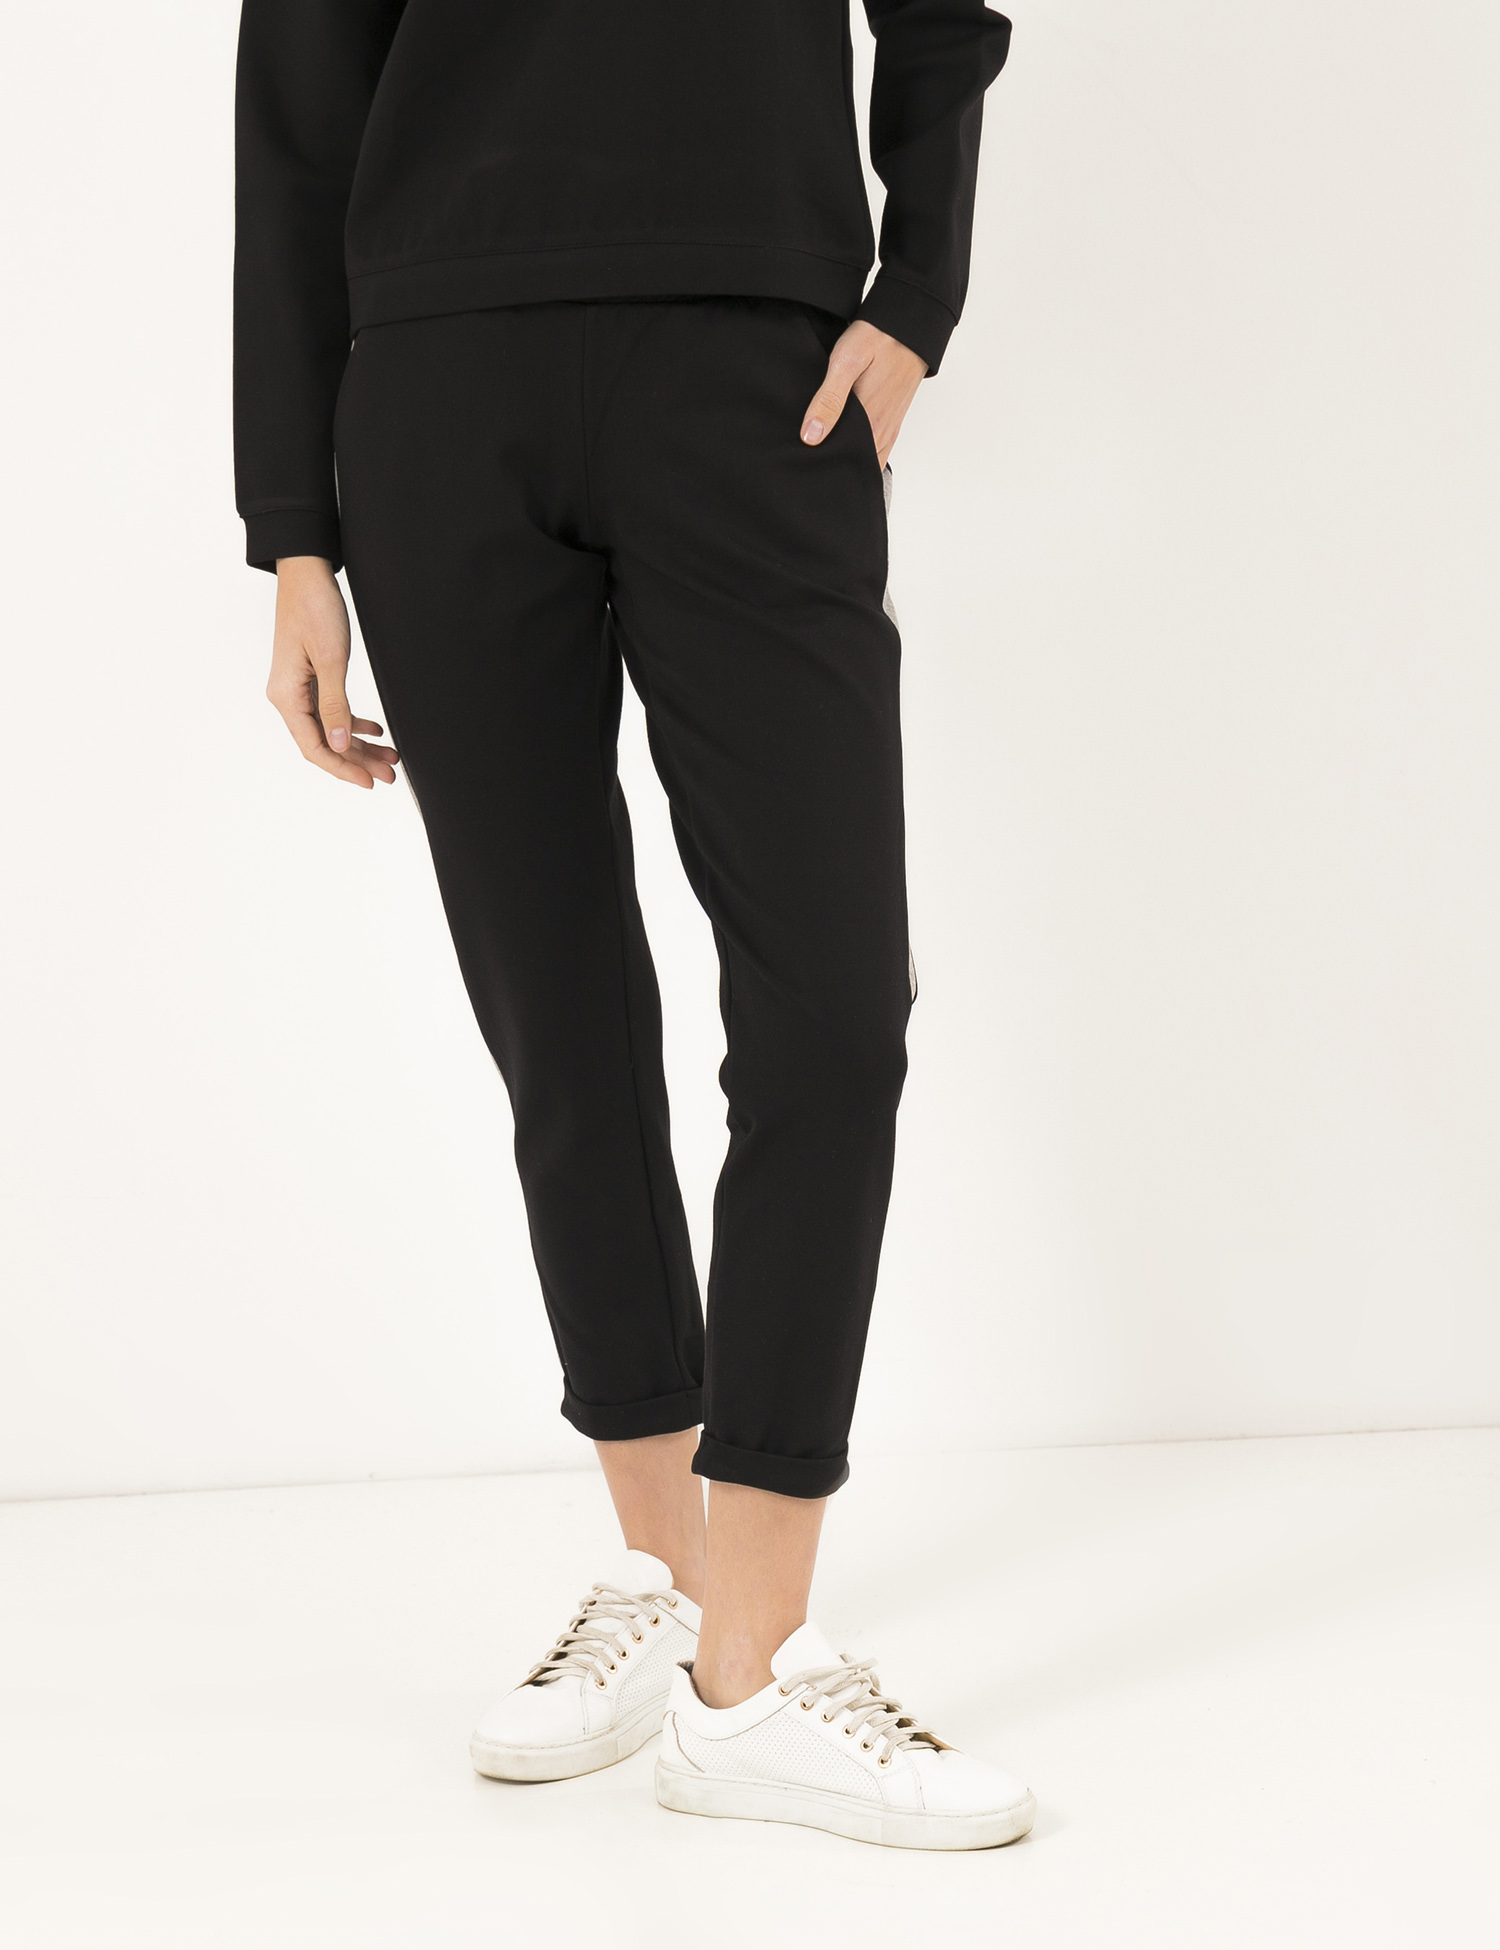 Картинка Жіночі чорно-сірі штани